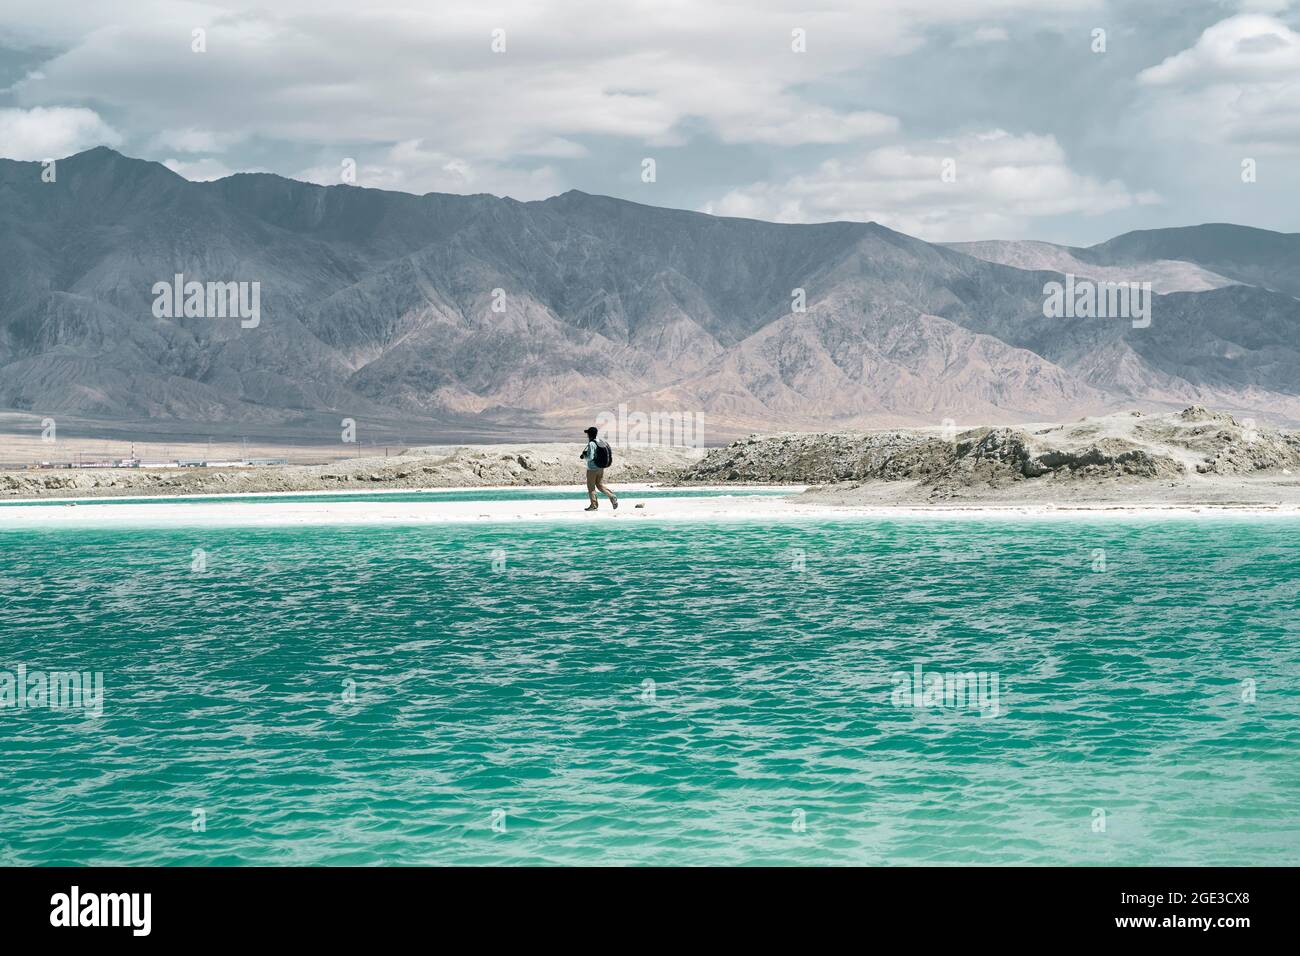 homme asiatique photographe mâle marchant au bord d'un lac salé avec des montagnes vallonnés en arrière-plan Banque D'Images